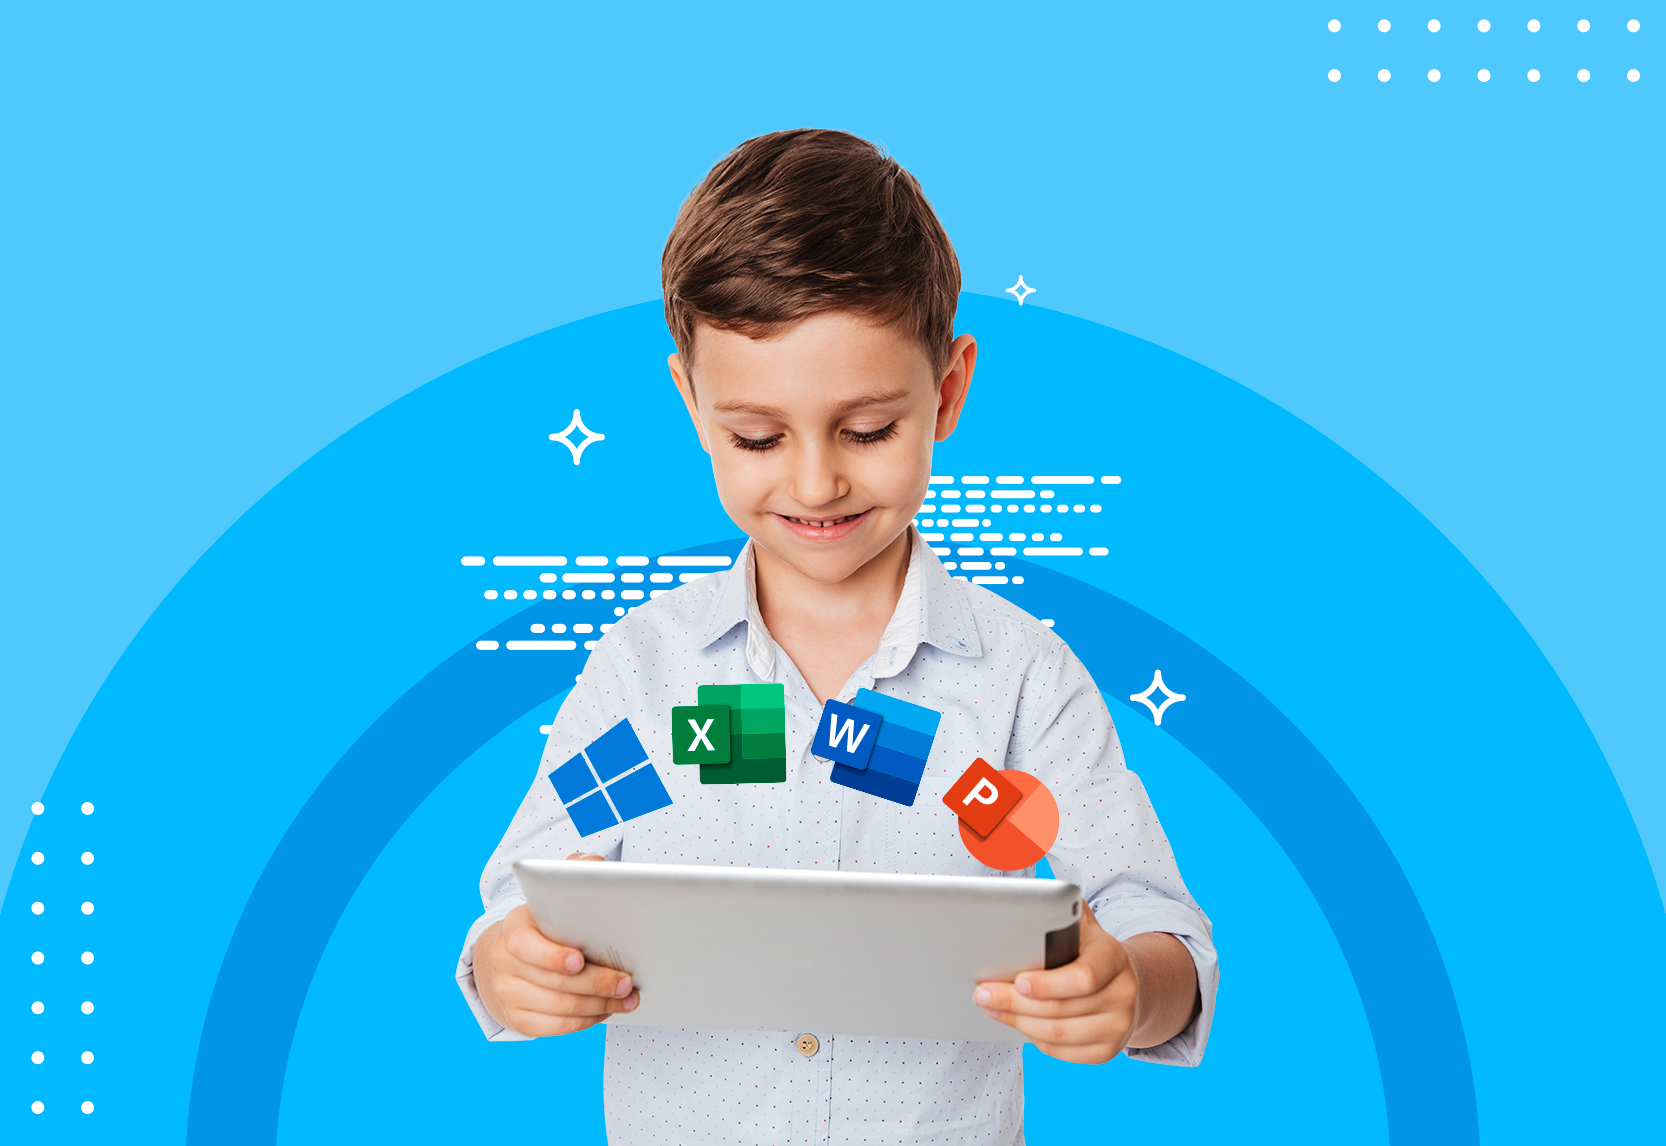 Curso de Microsoft Office para niños | Instituto de Diseño y Tecnología